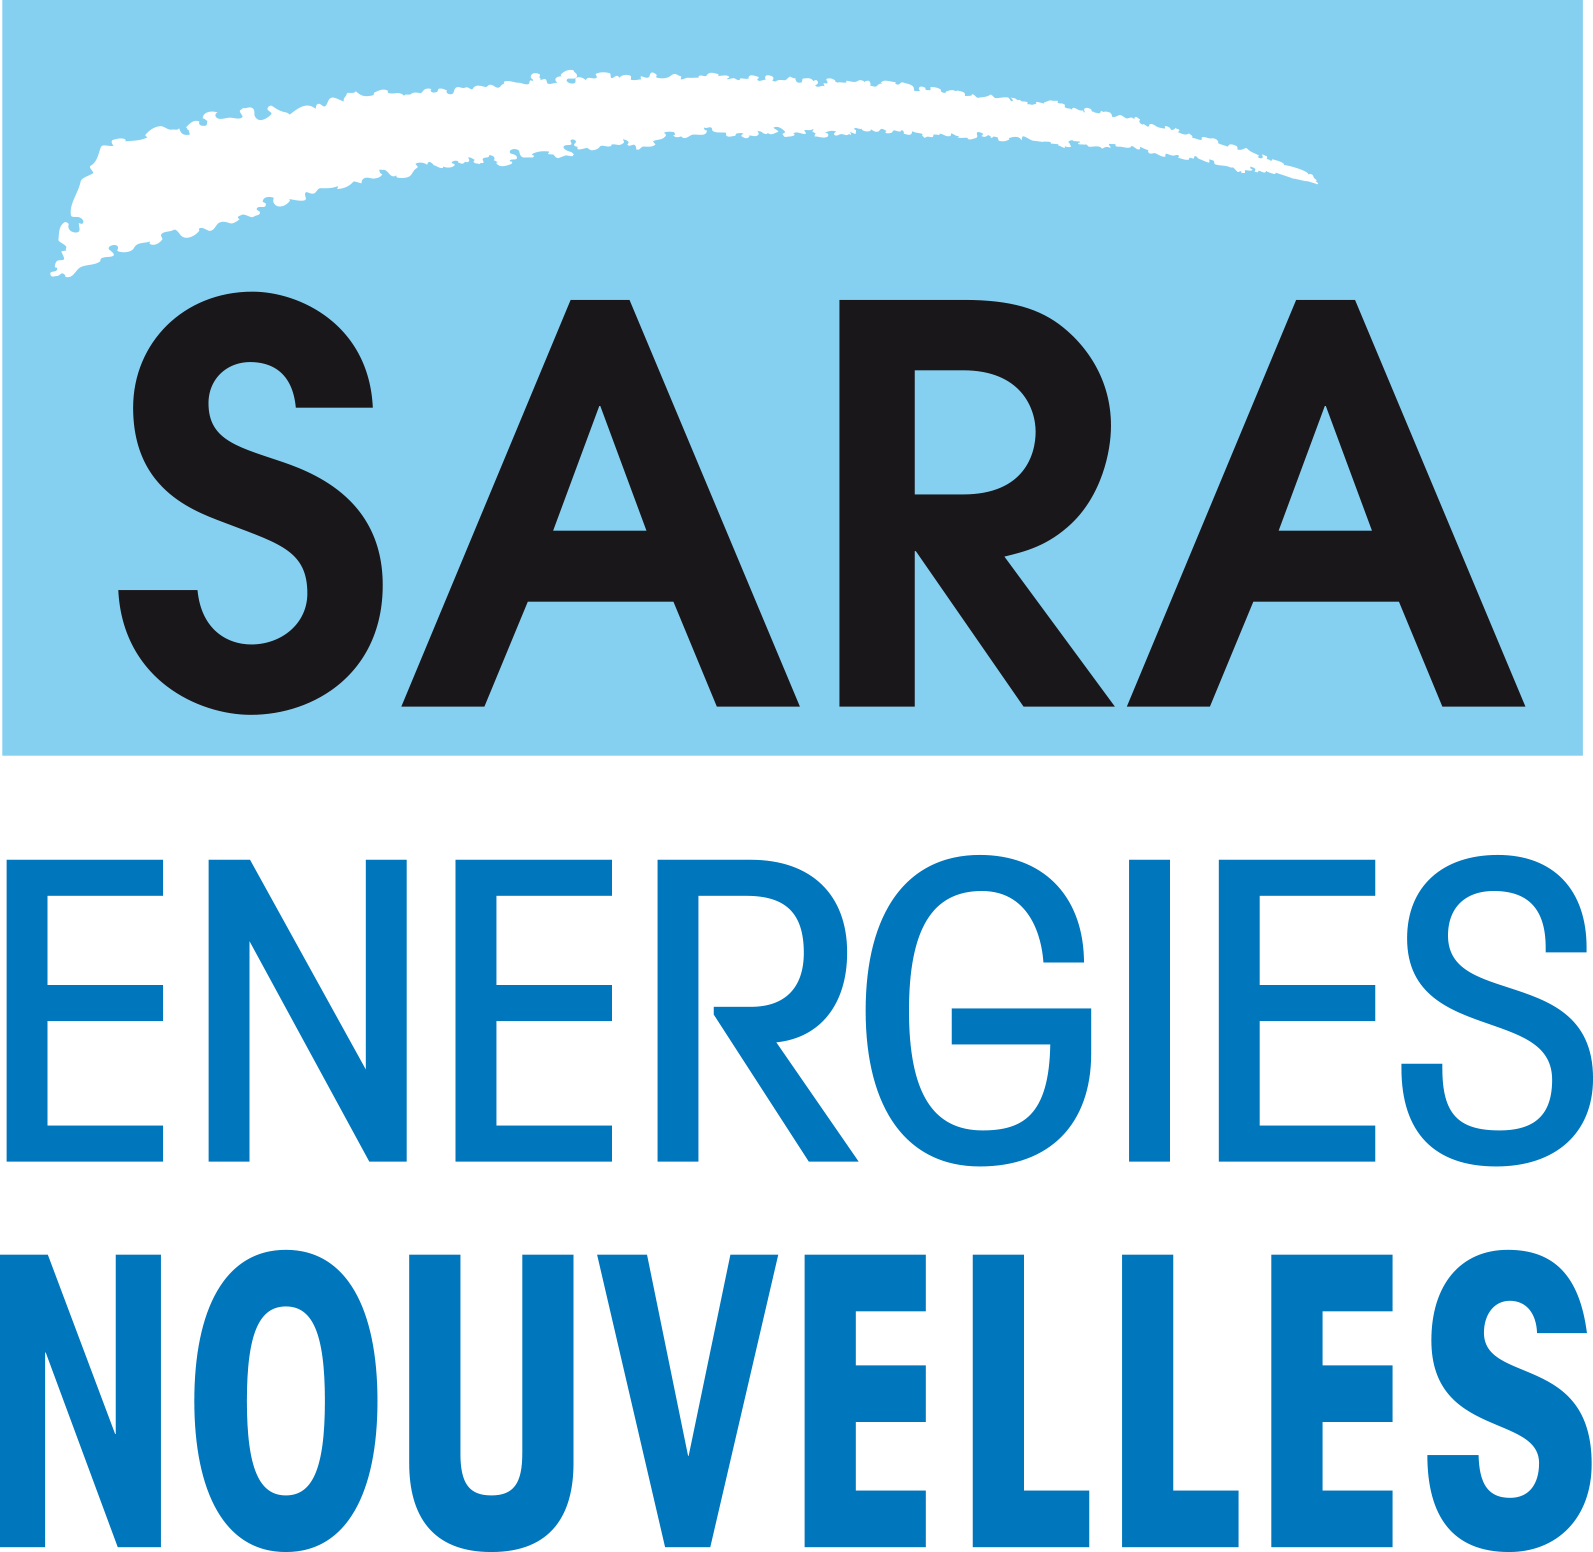 SARA Energies nouvelles